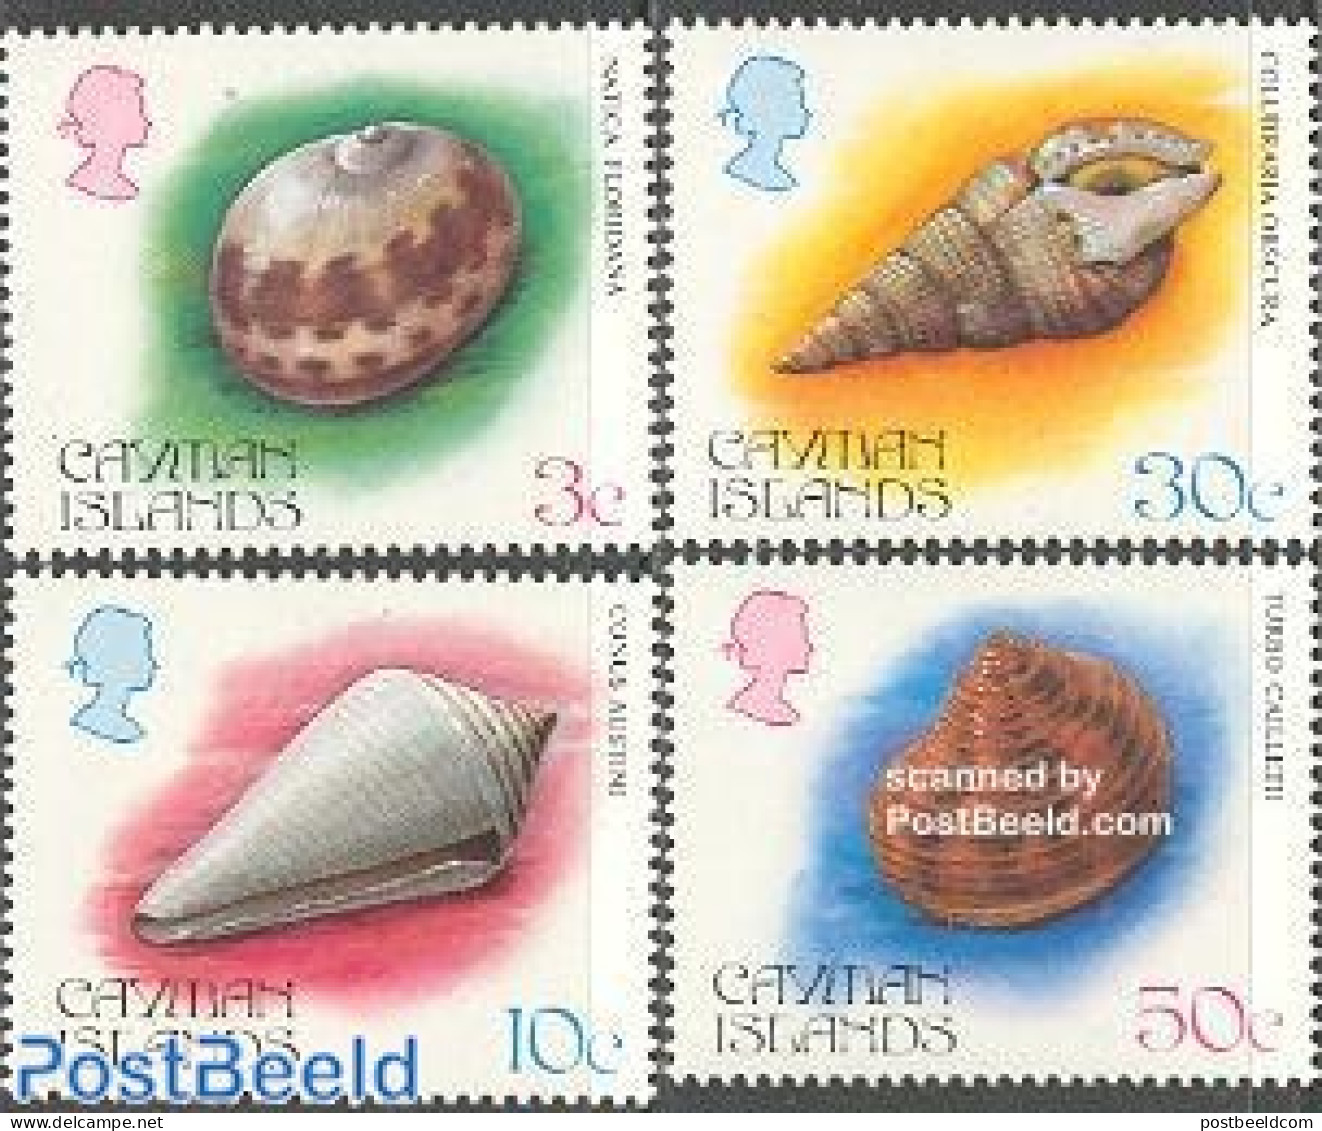 Cayman Islands 1984 Shells 4v, Mint NH, Nature - Shells & Crustaceans - Mundo Aquatico